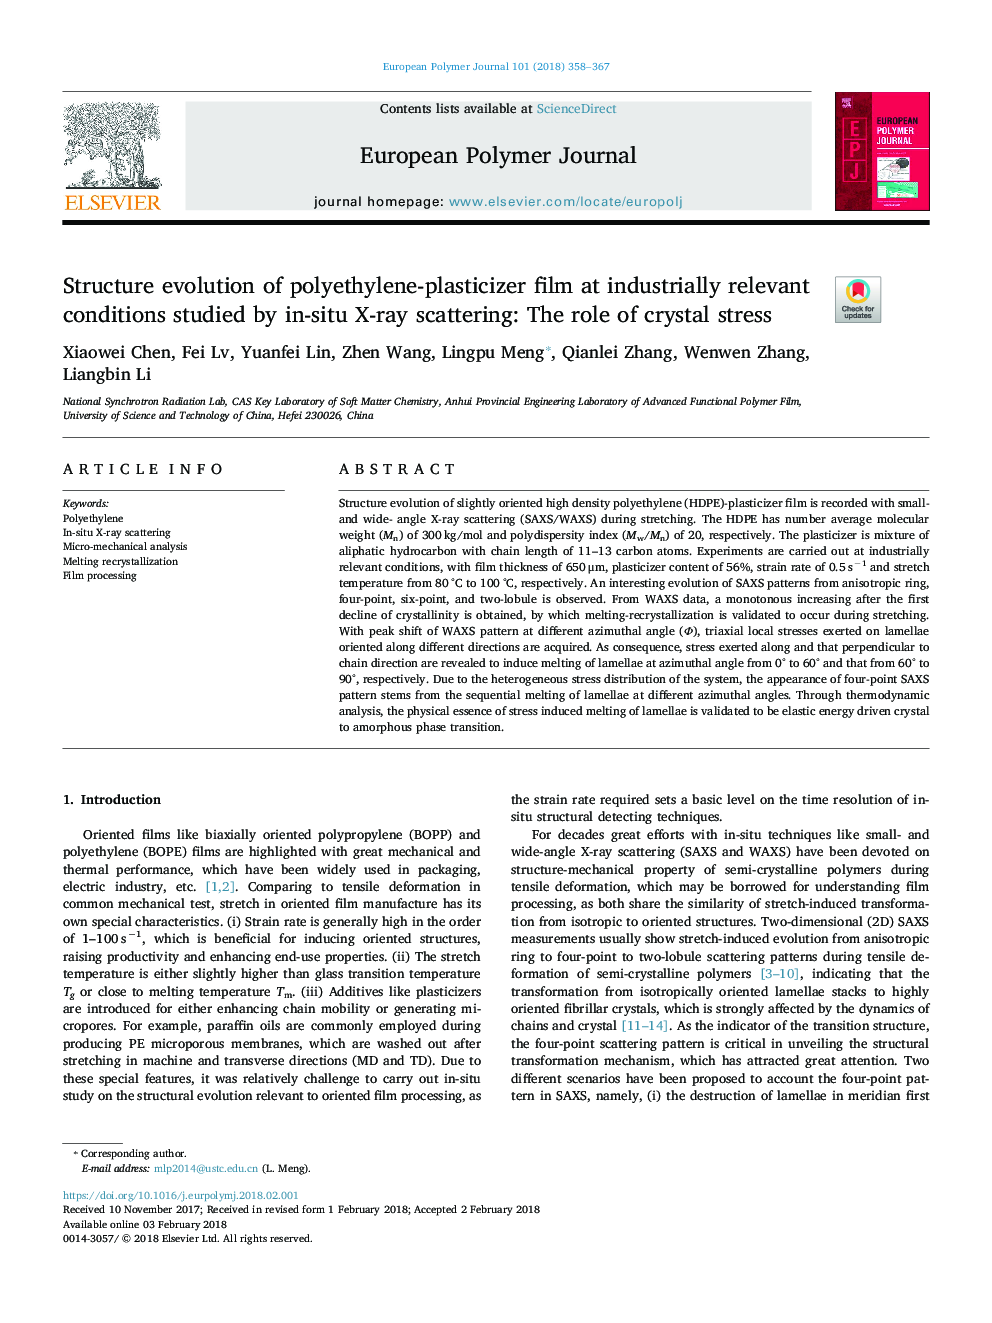 تکامل ساختاری فیلم پلی اتیلن-پلاستیسیستر در شرایط صنعتی مرتبط با پراکندگی اشعه ایکس در محل مورد مطالعه: نقش استرس بلوری 